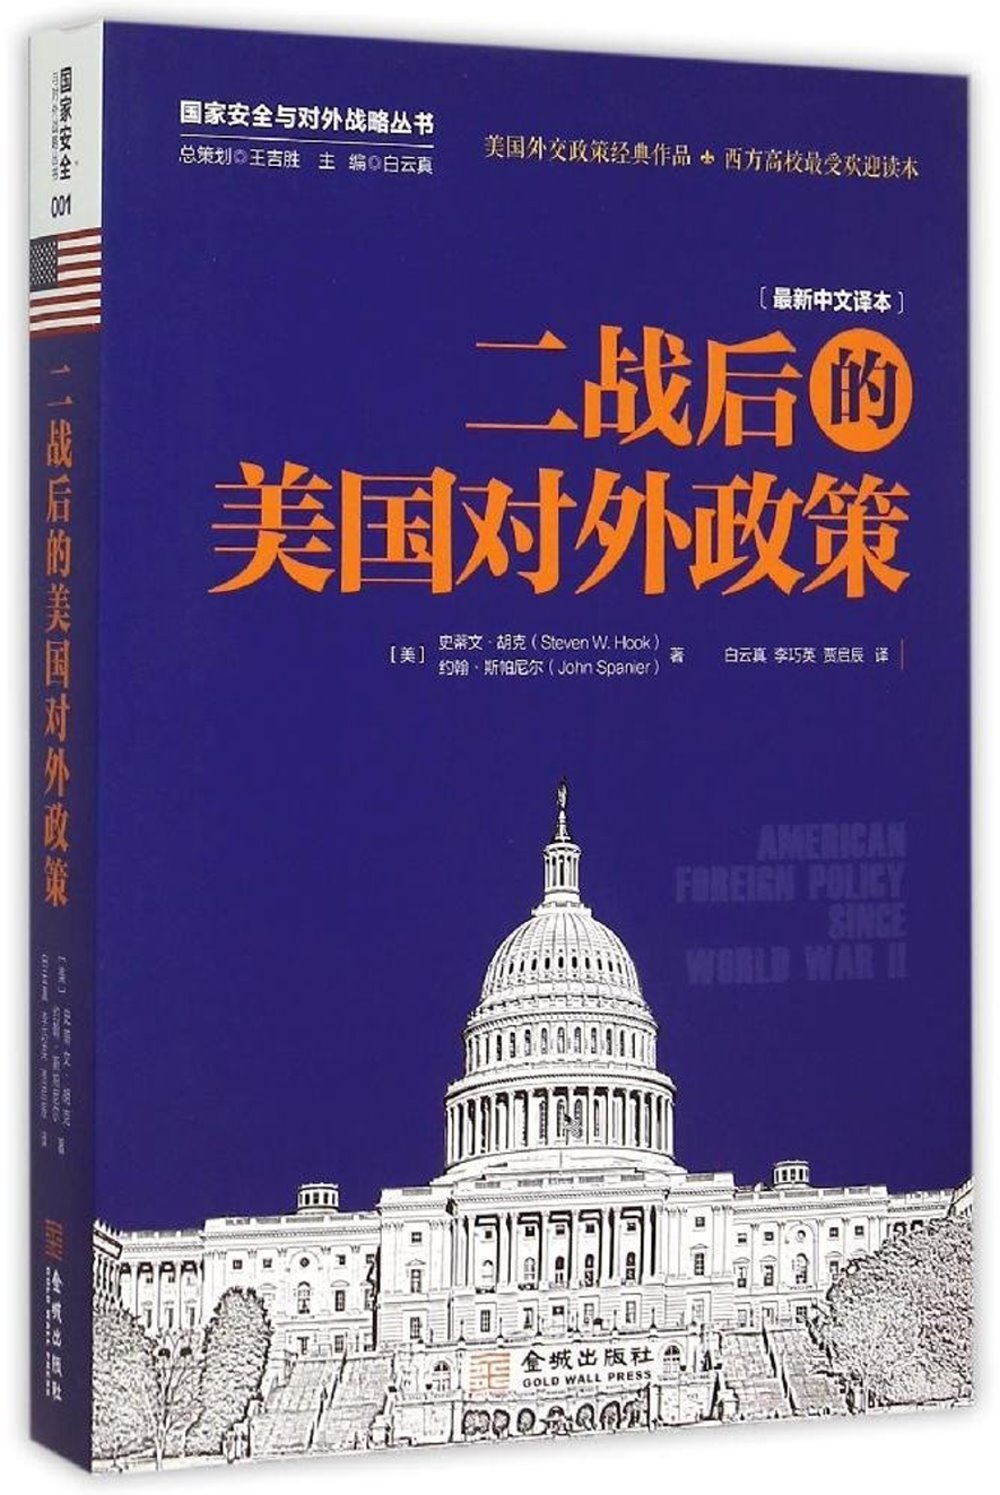 二戰後的美國對外政策(最新中文譯本)